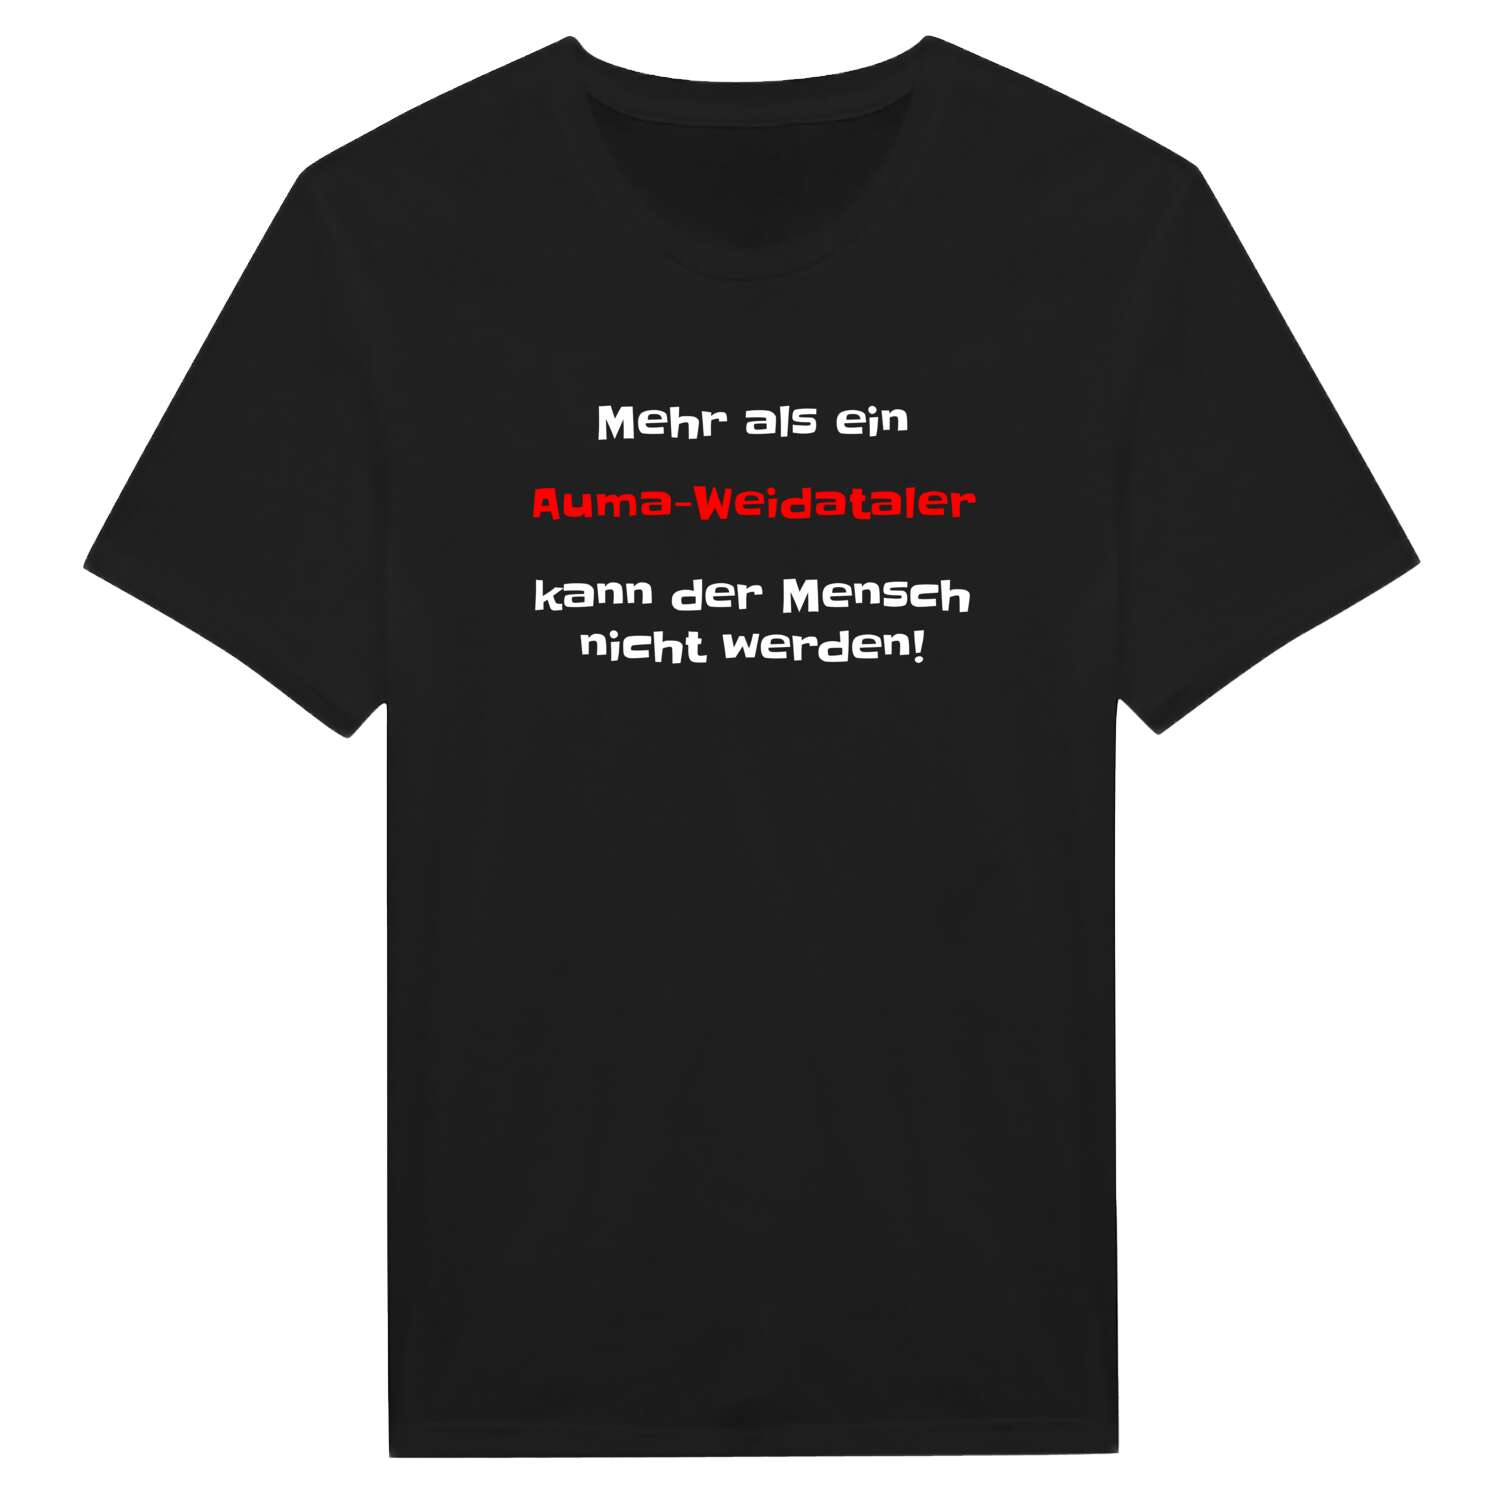 Auma-Weidatal T-Shirt »Mehr als ein«